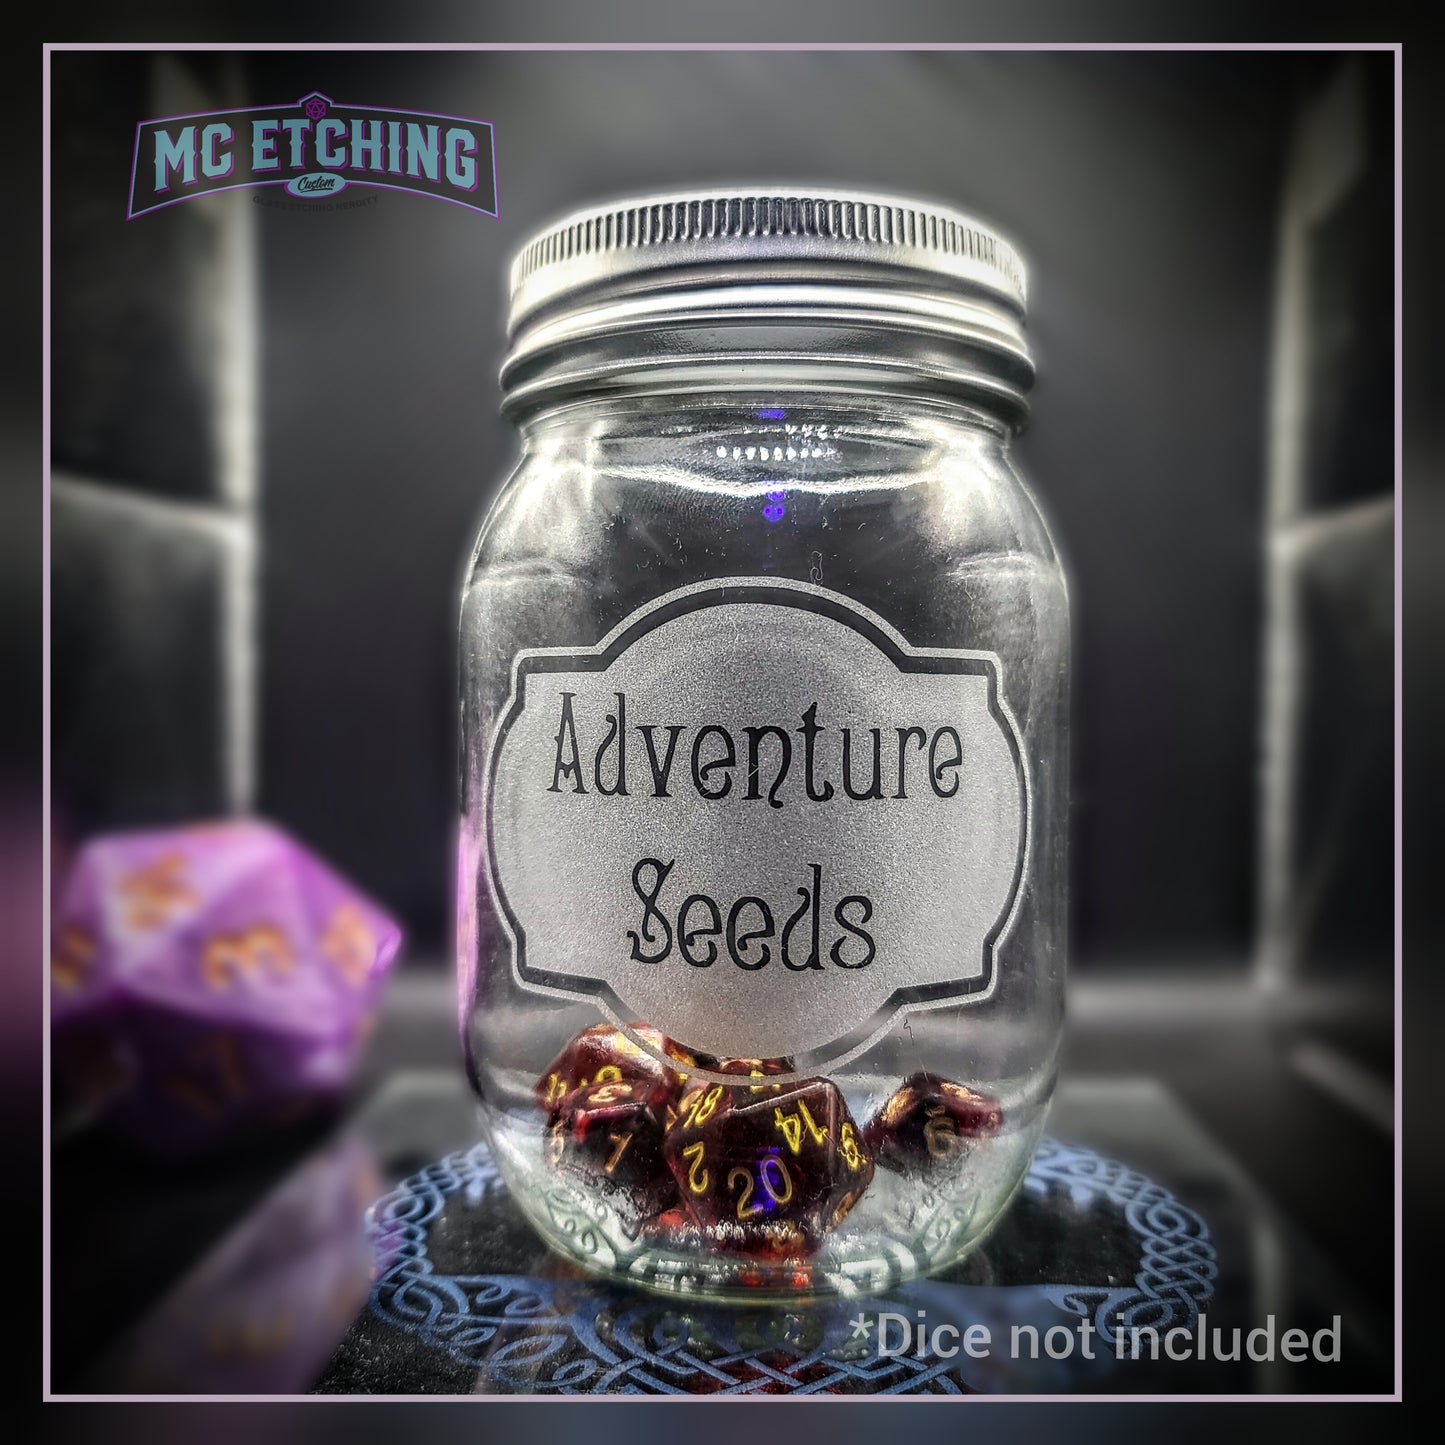 Adventure Seed Jars